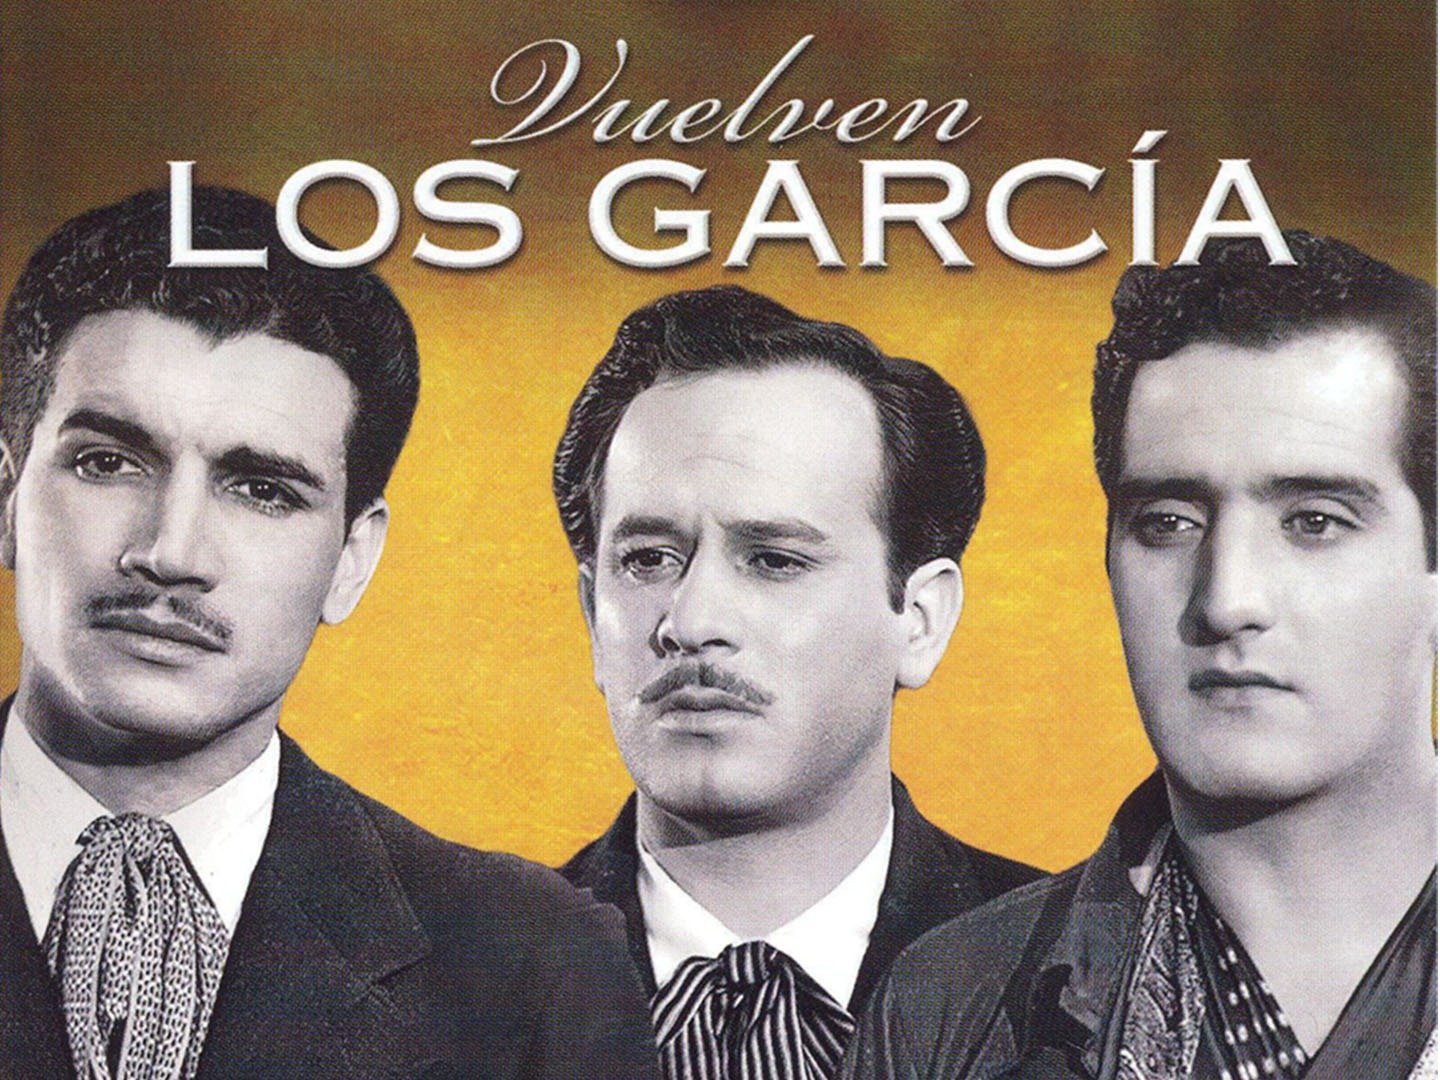 Vuelven los García Pictures - Rotten Tomatoes